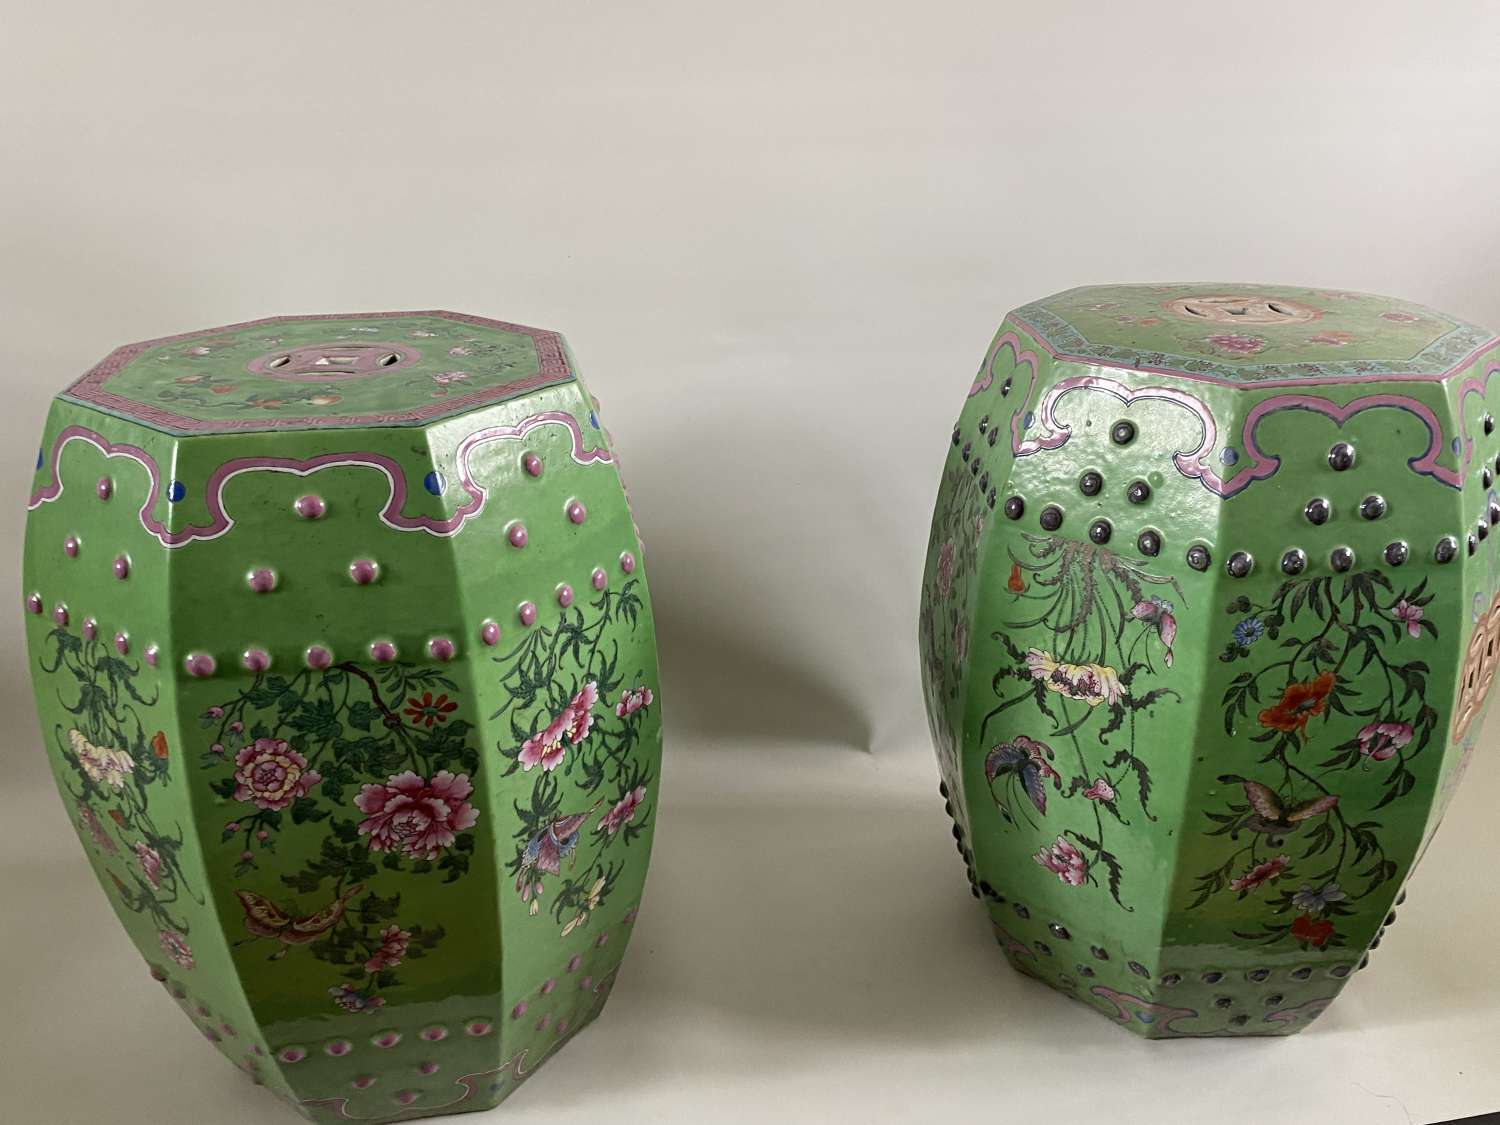 A pair of Cantonese garden seats